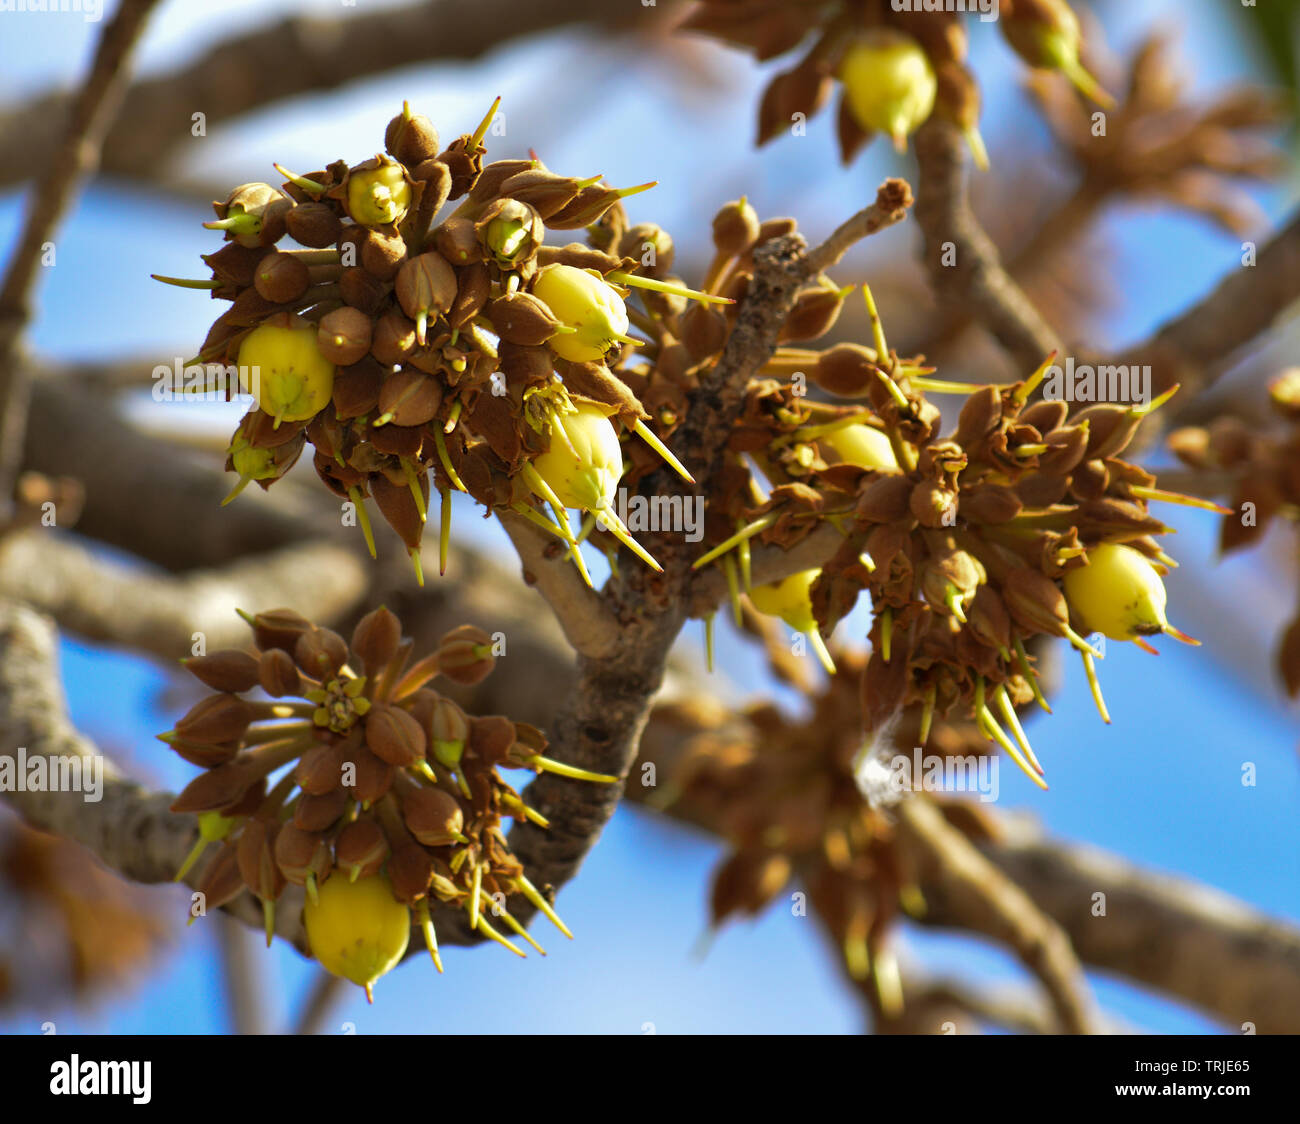 Mahua Tree in full bloom Stock Photo